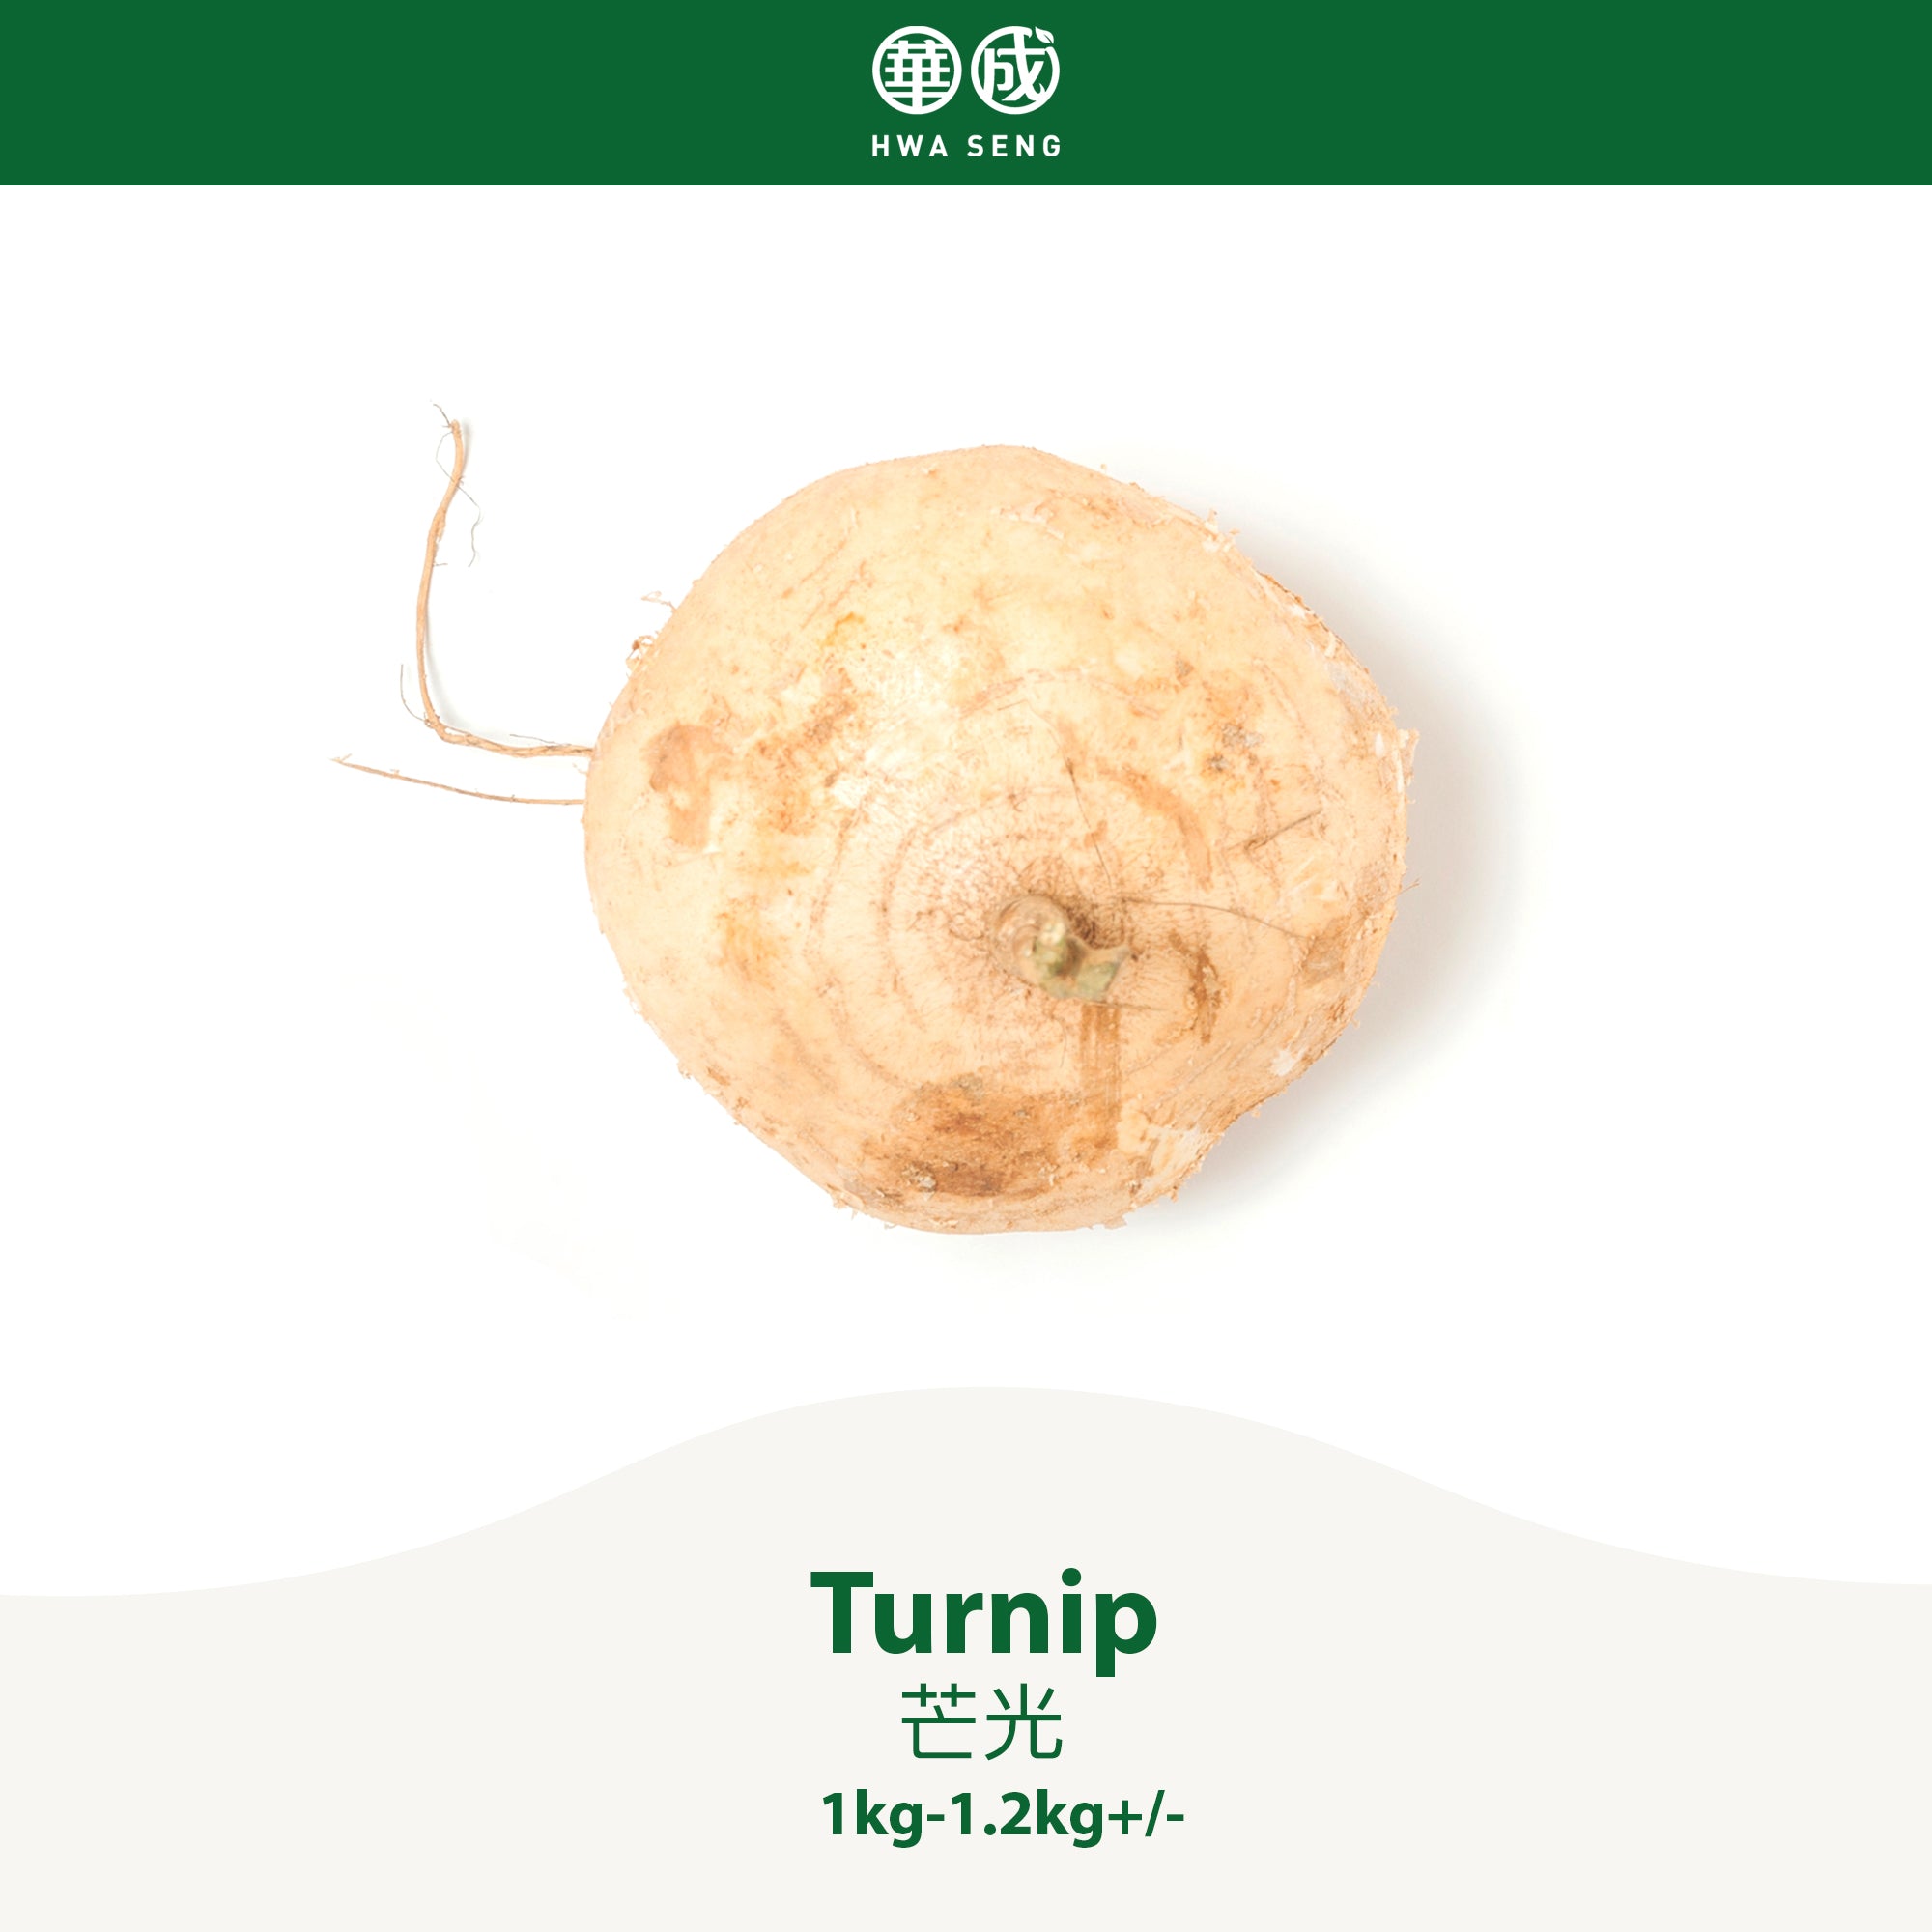 Turnip 芒光 1kg-1.2kg+/-